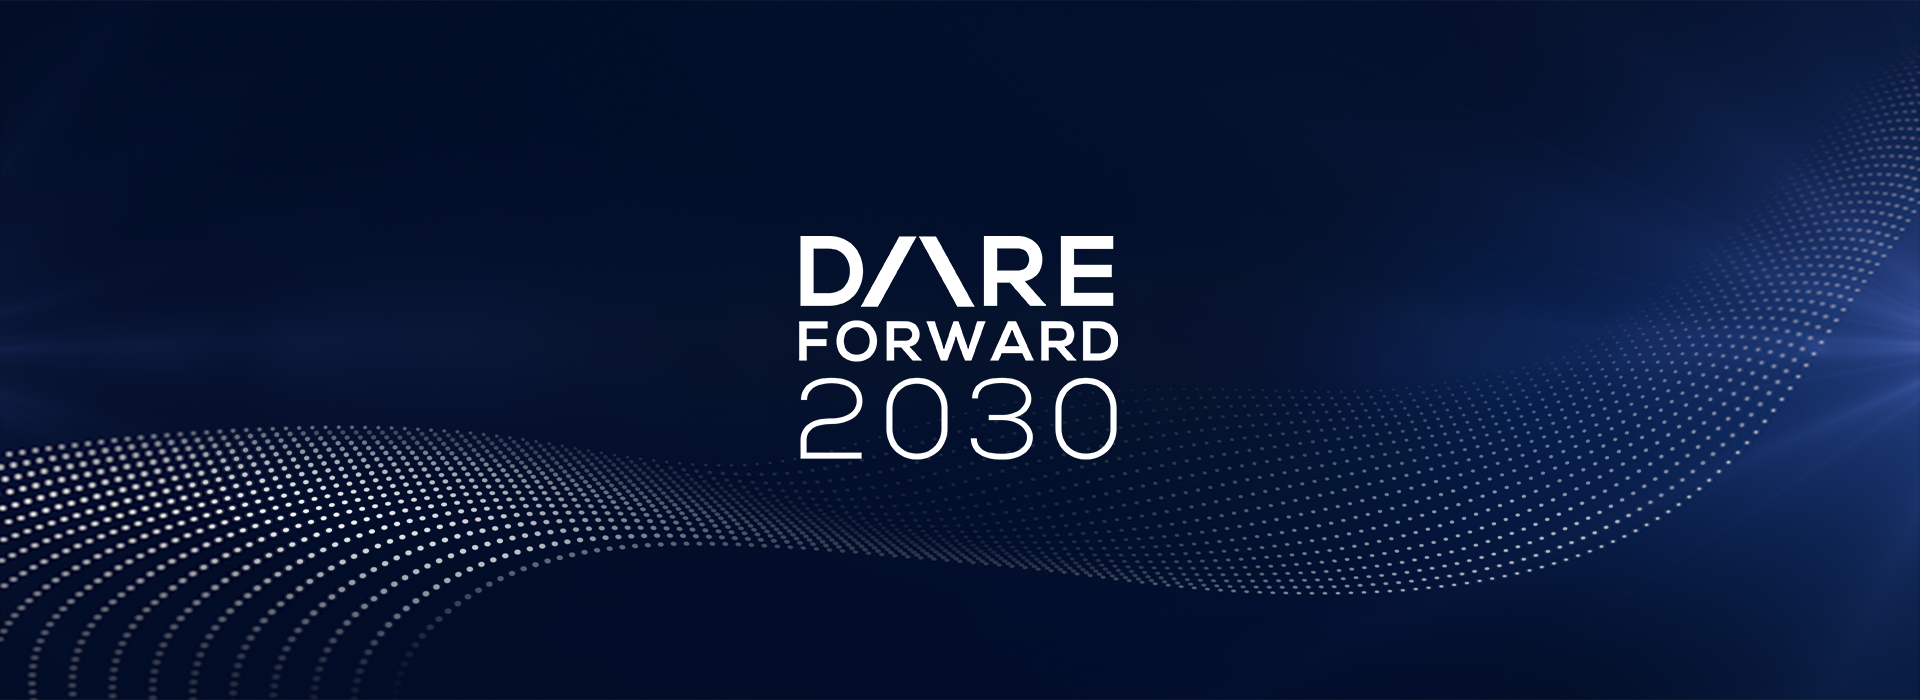 Dare Forward 2030 immagine hero